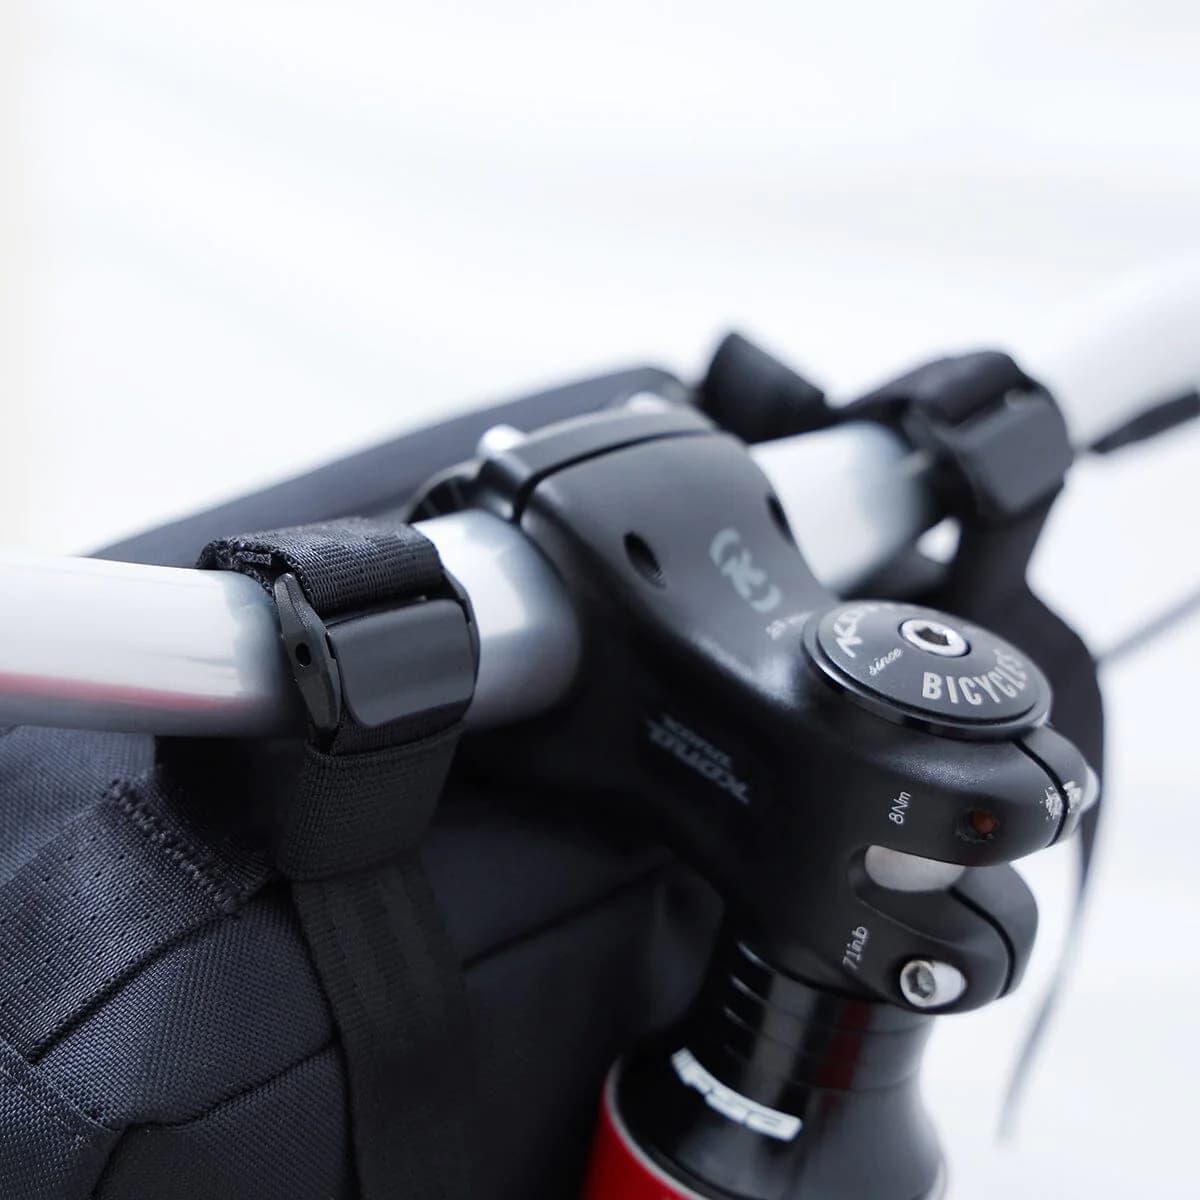 Holman Handlebar Bag attached to bike handlebars